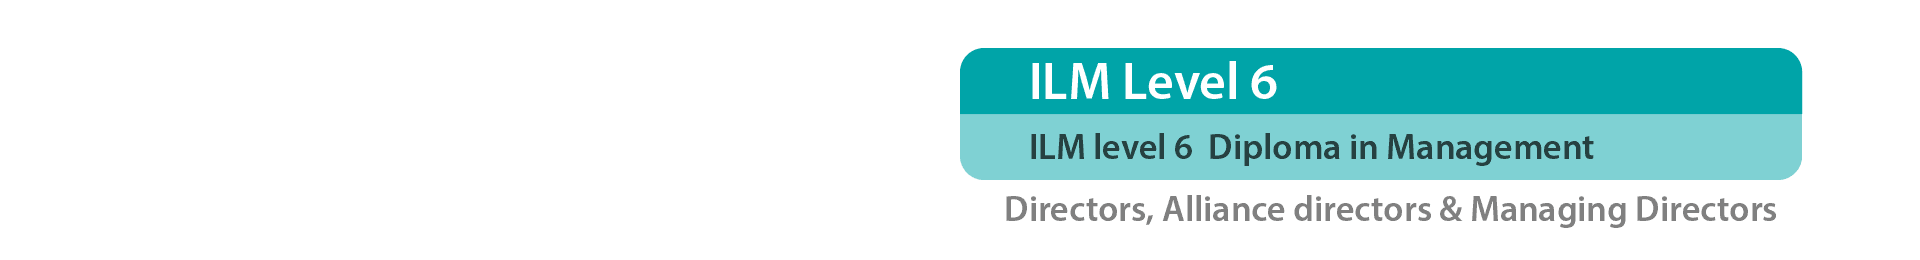 ILM Level 6 graphic